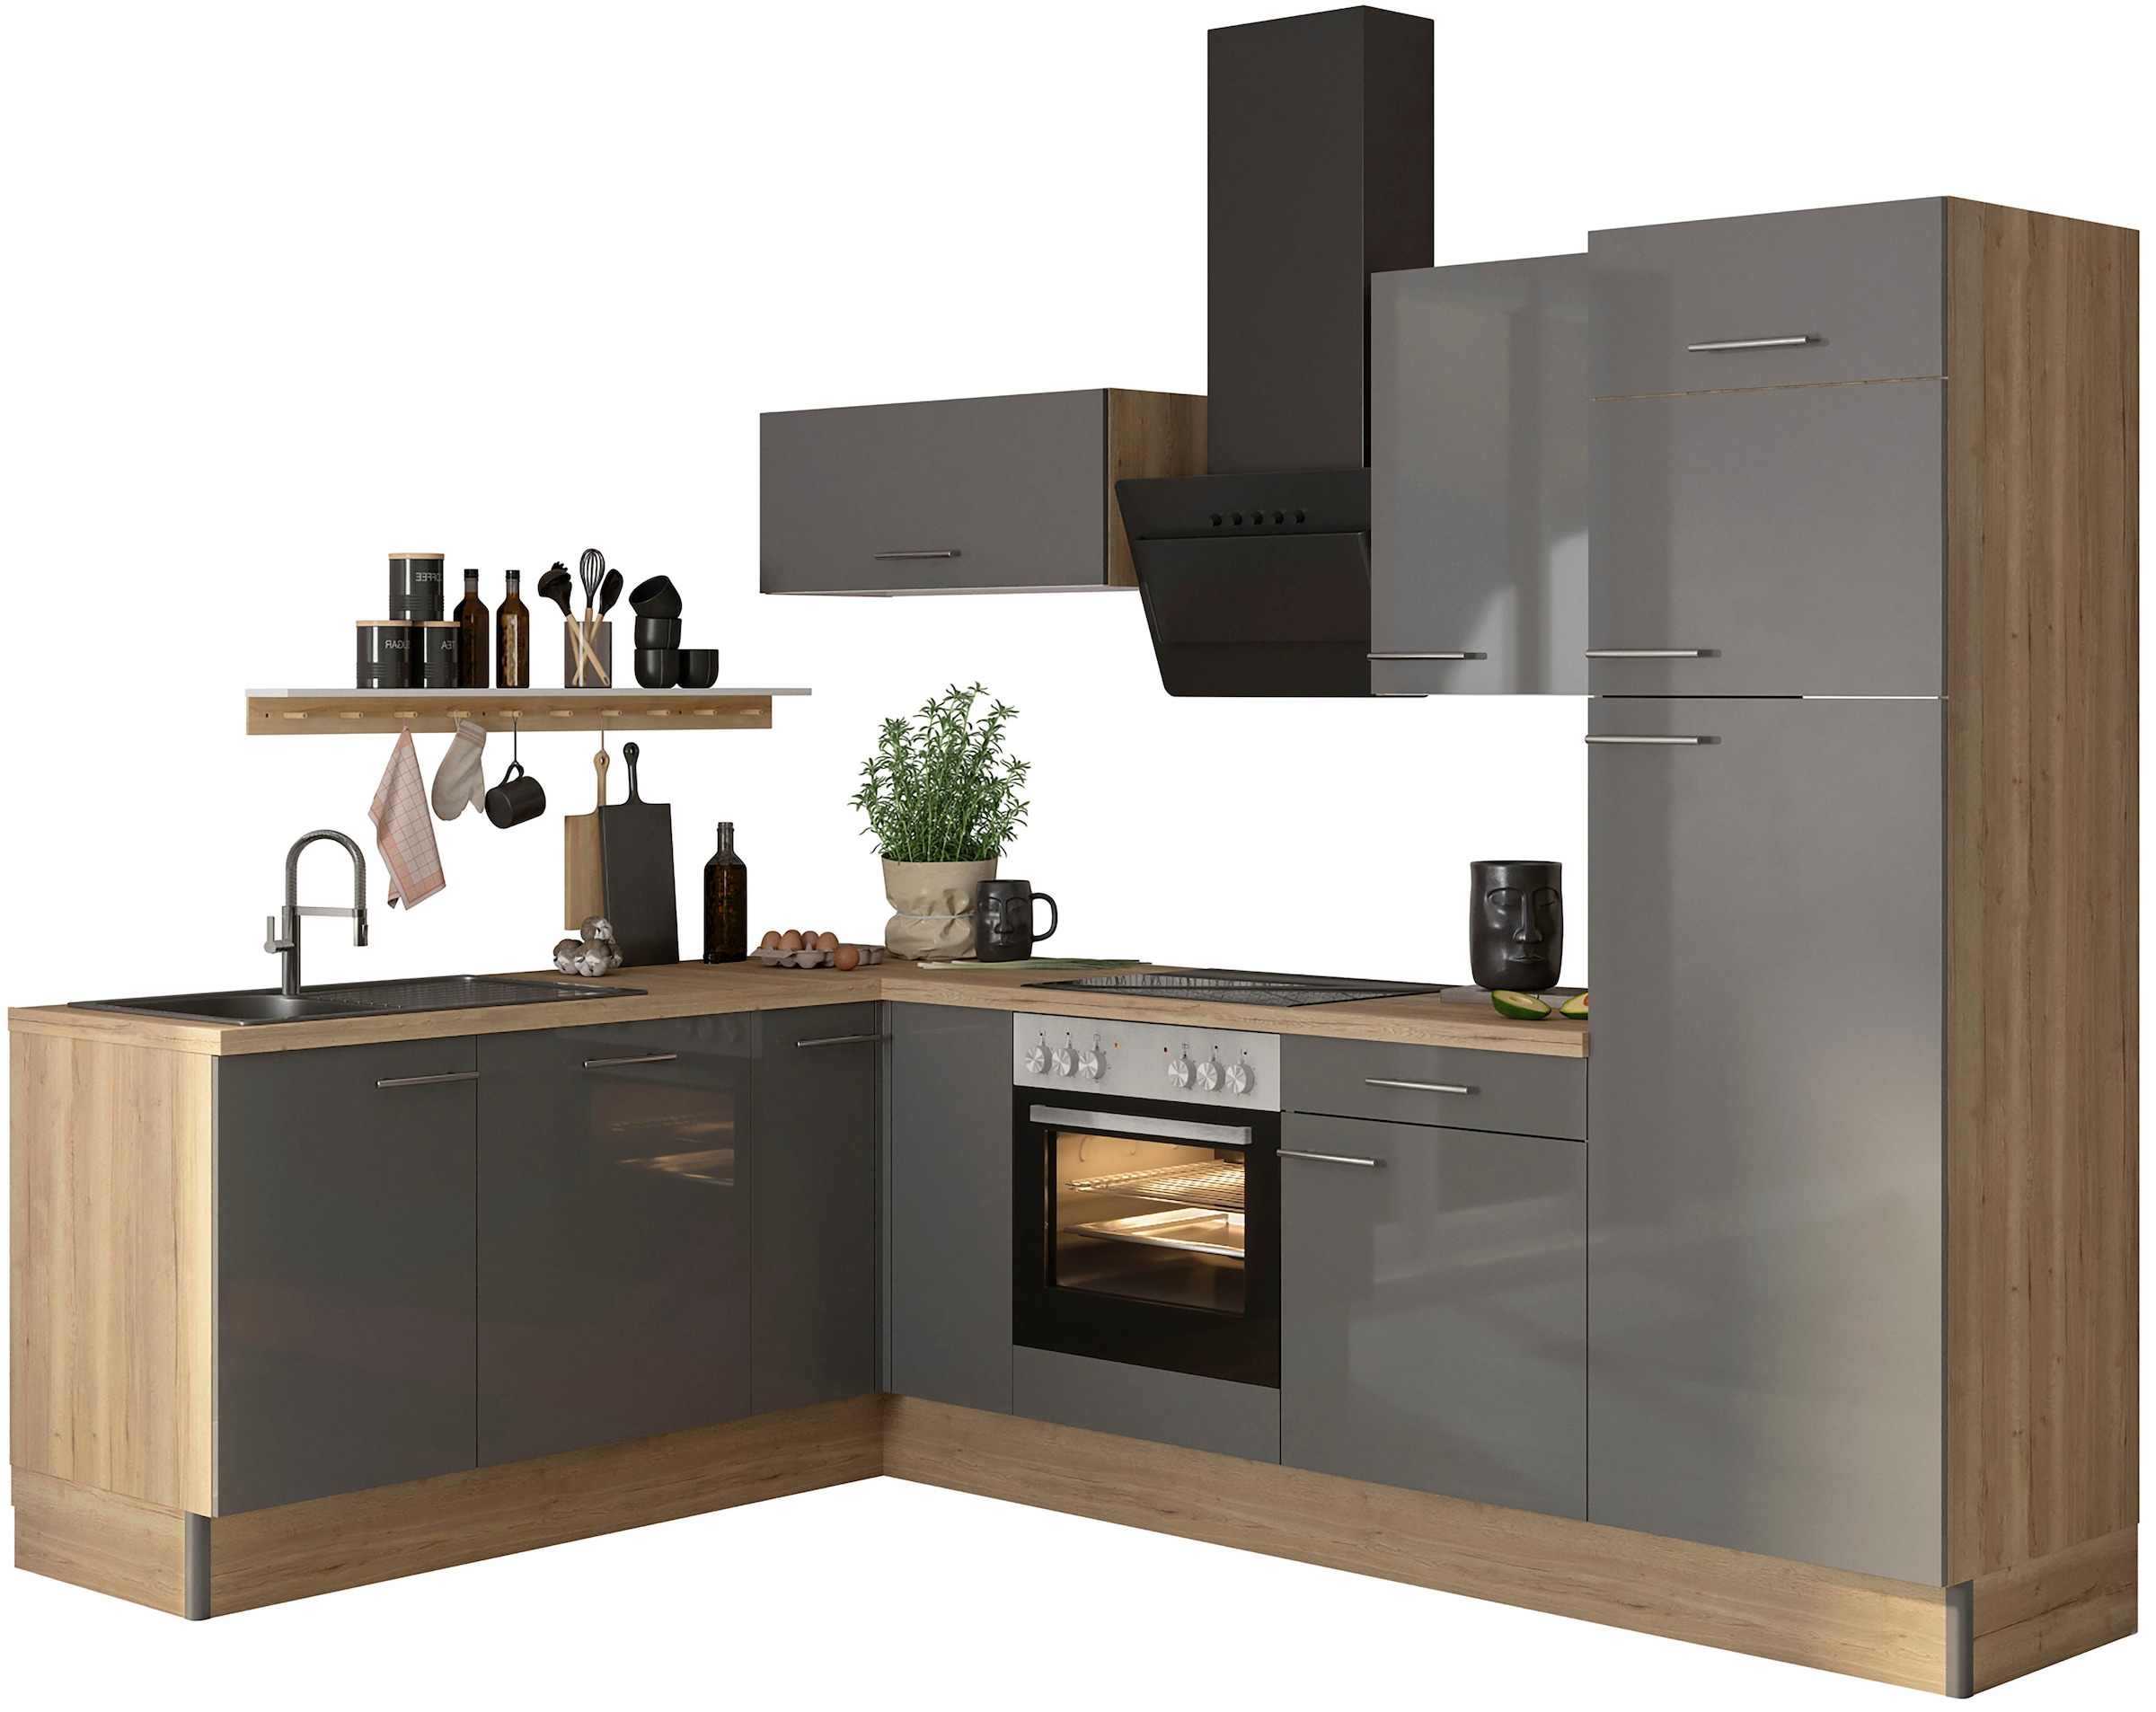 OPTIFIT Küche "Klara", 200 x 270 cm breit, wahlweise mit E-Geräten